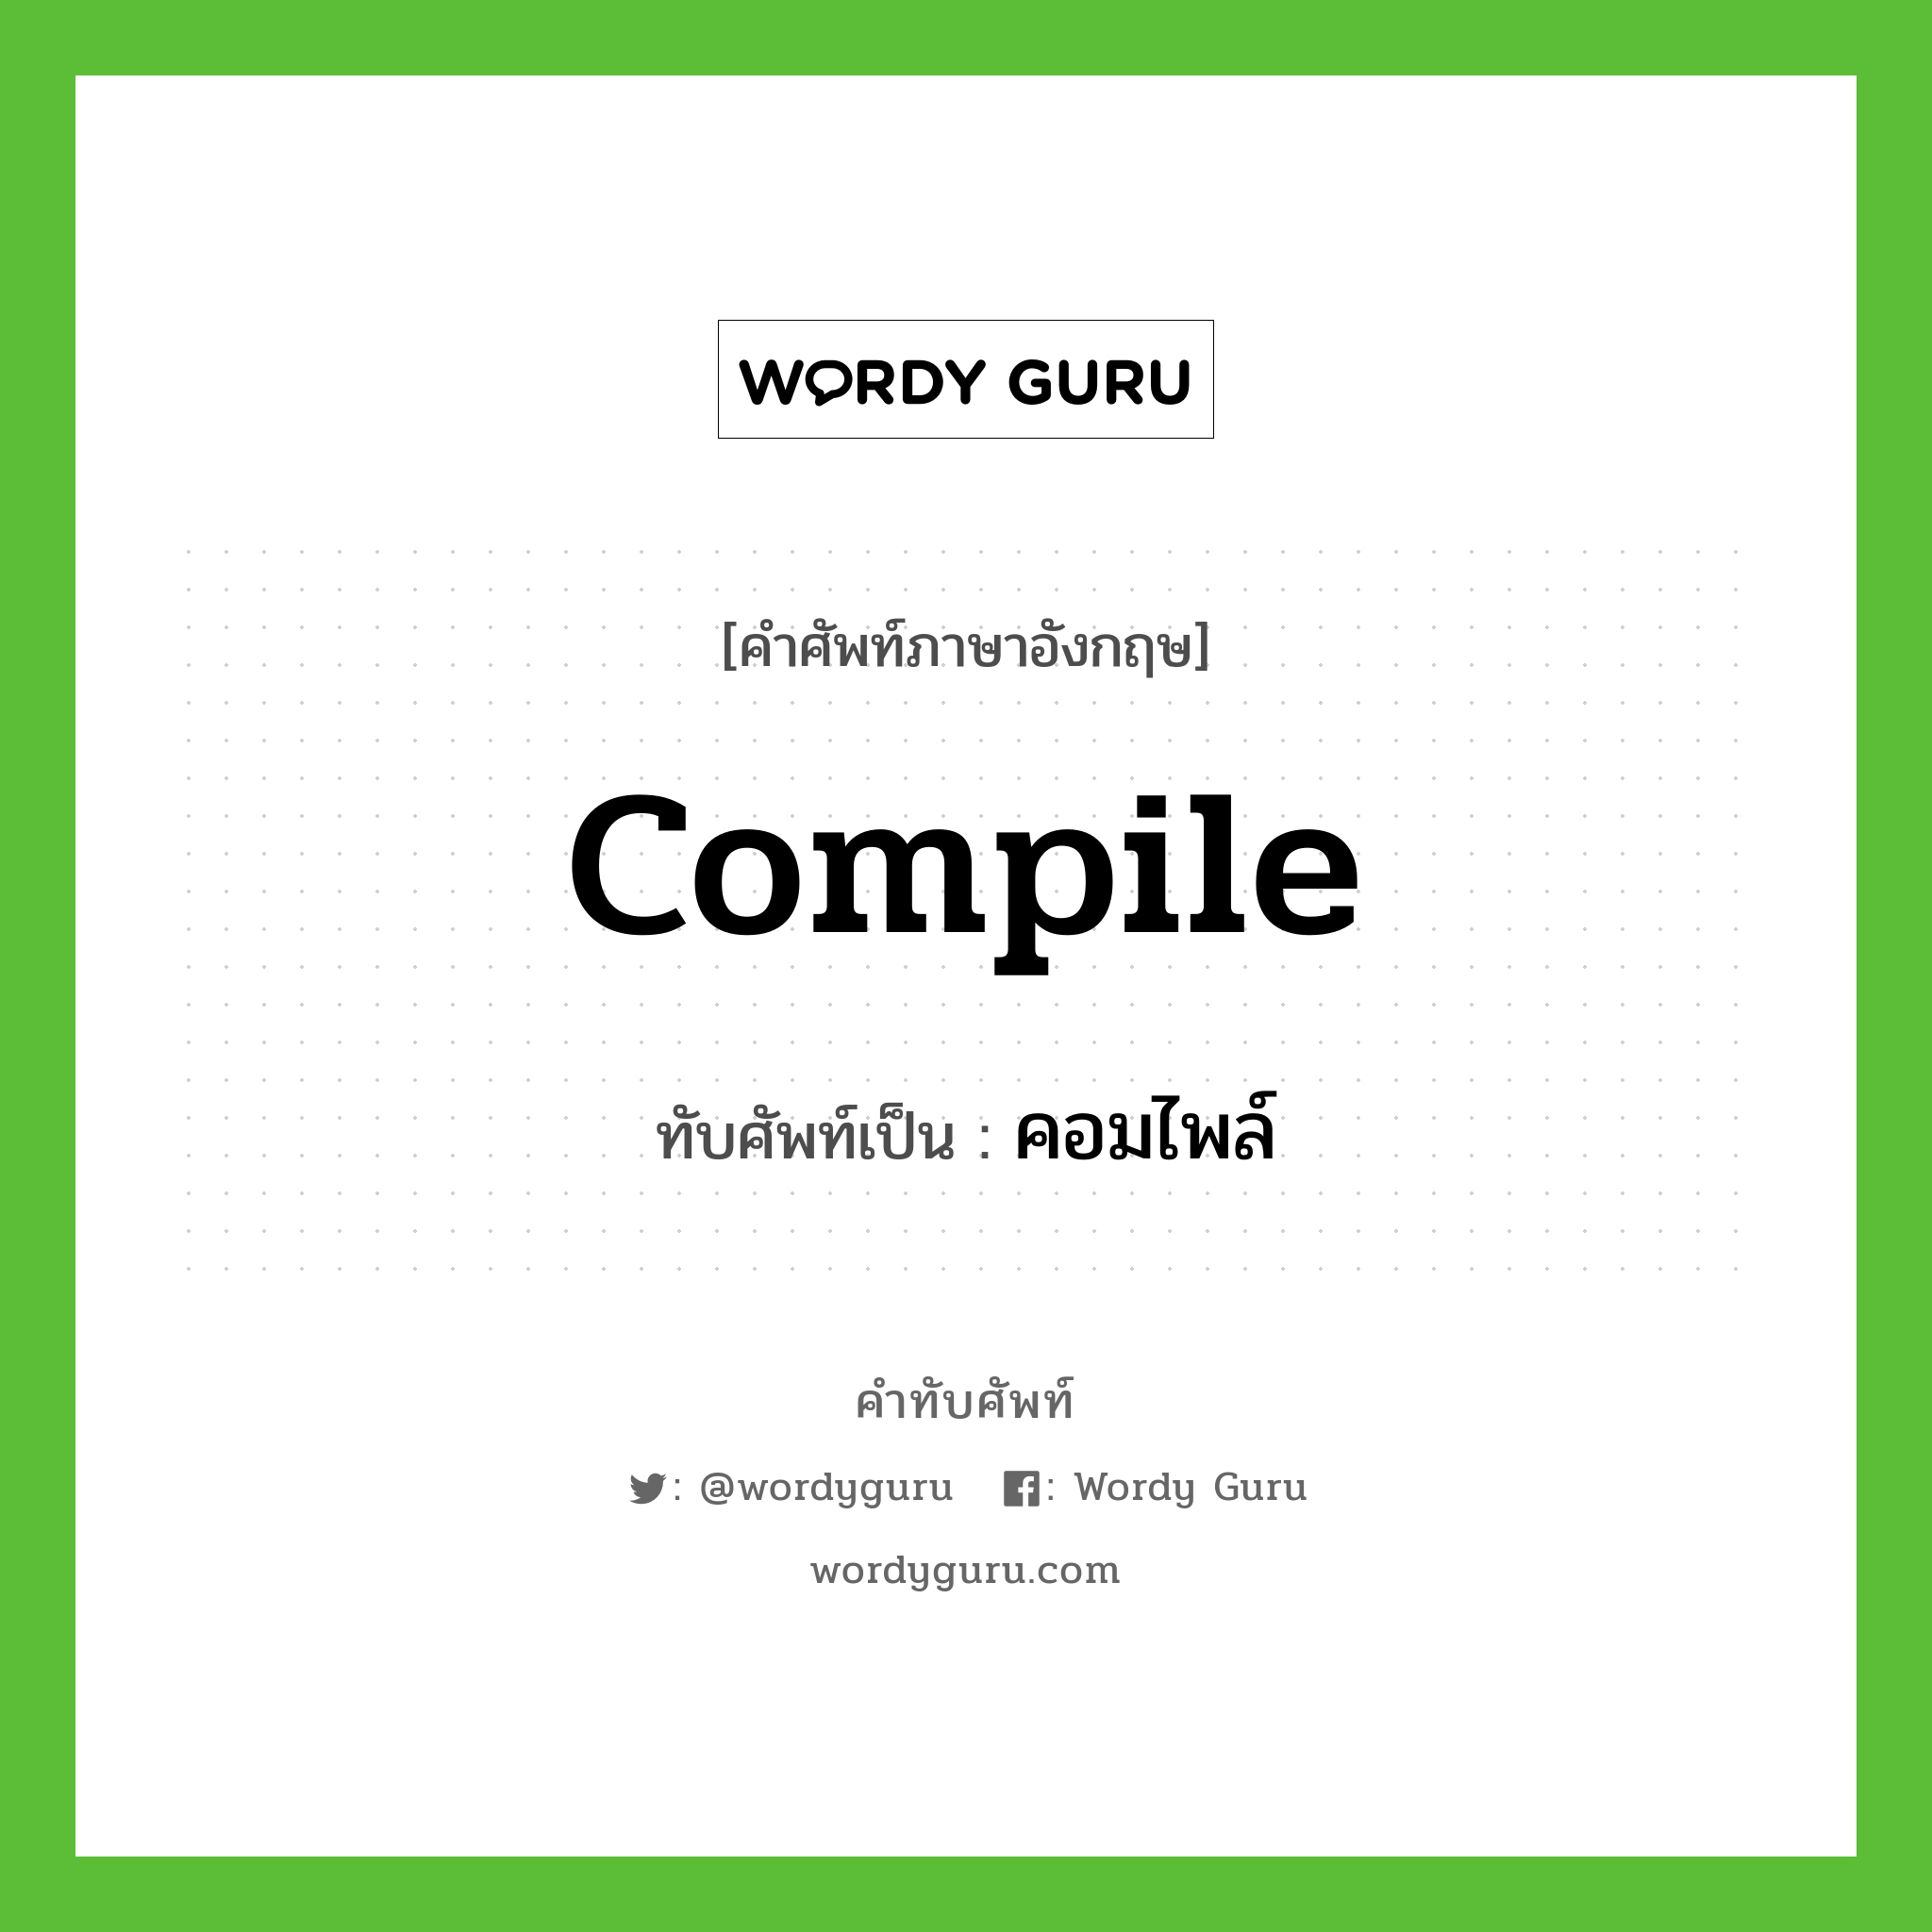 compile เขียนเป็นคำไทยว่าอะไร?, คำศัพท์ภาษาอังกฤษ compile ทับศัพท์เป็น คอมไพล์